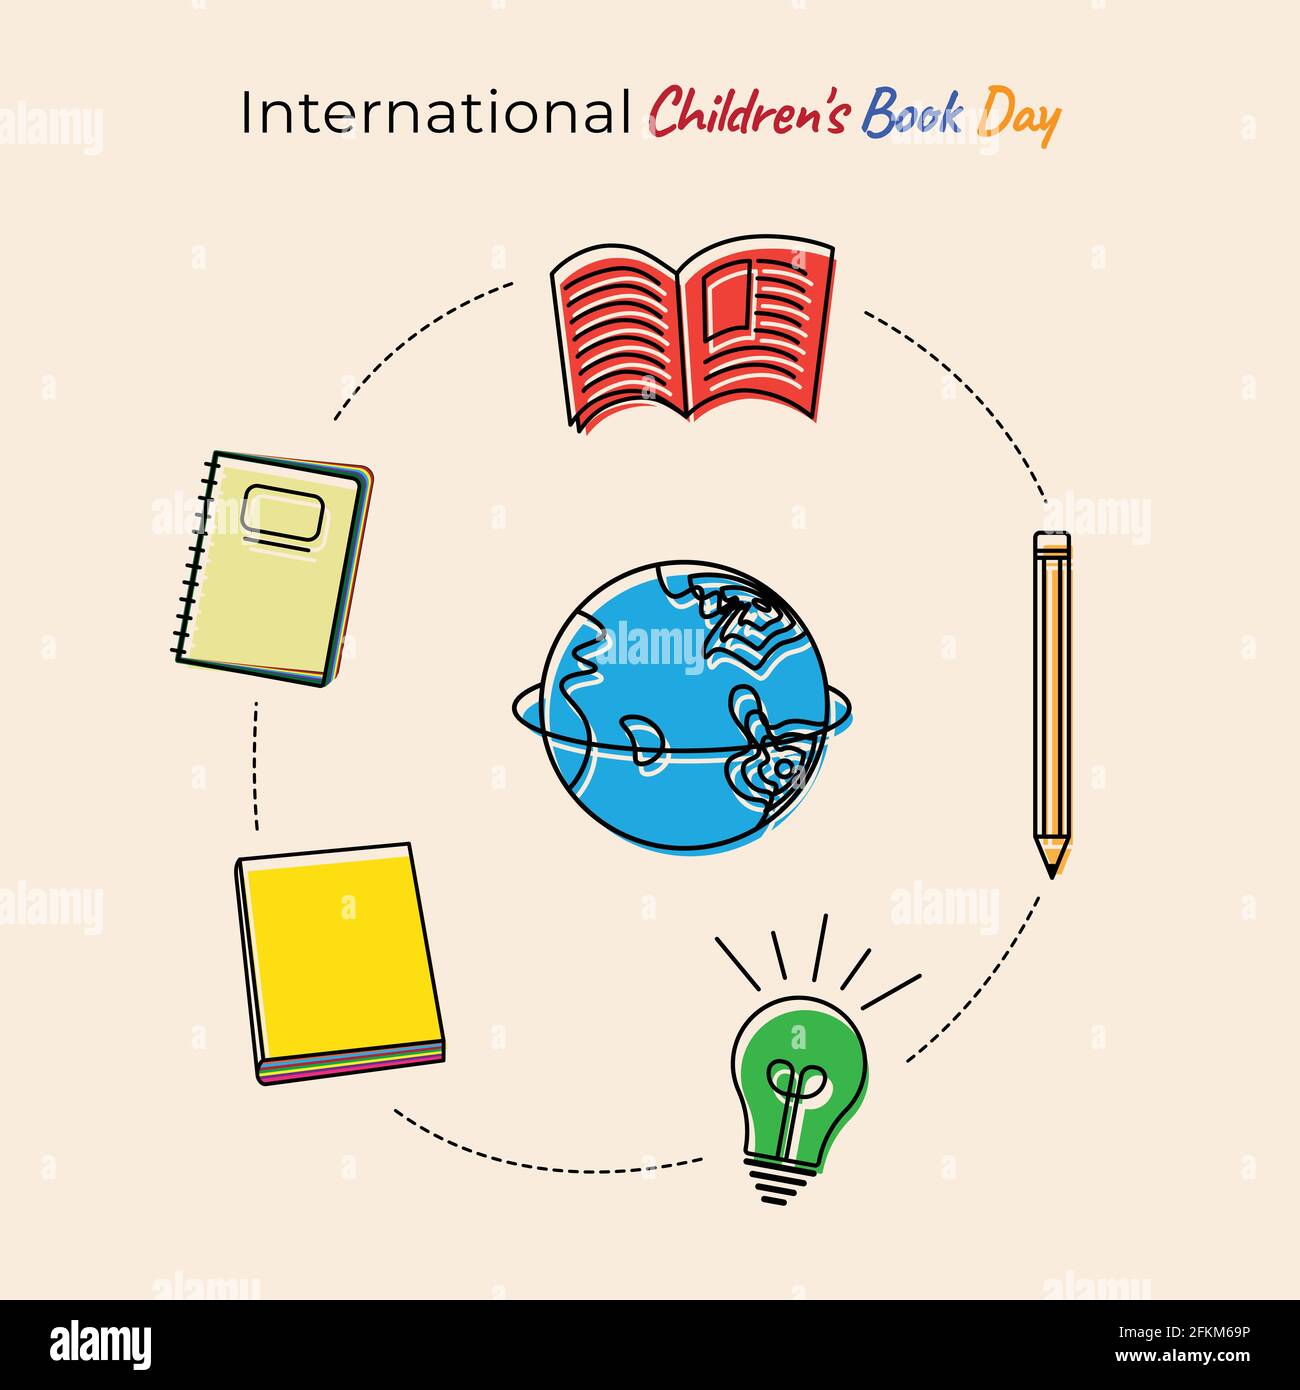 Diseño del día del libro internacional para niños con herramienta de educación de vuelo alrededor de la tierra. También una buena plantilla para el diseño educativo. Ilustración del Vector